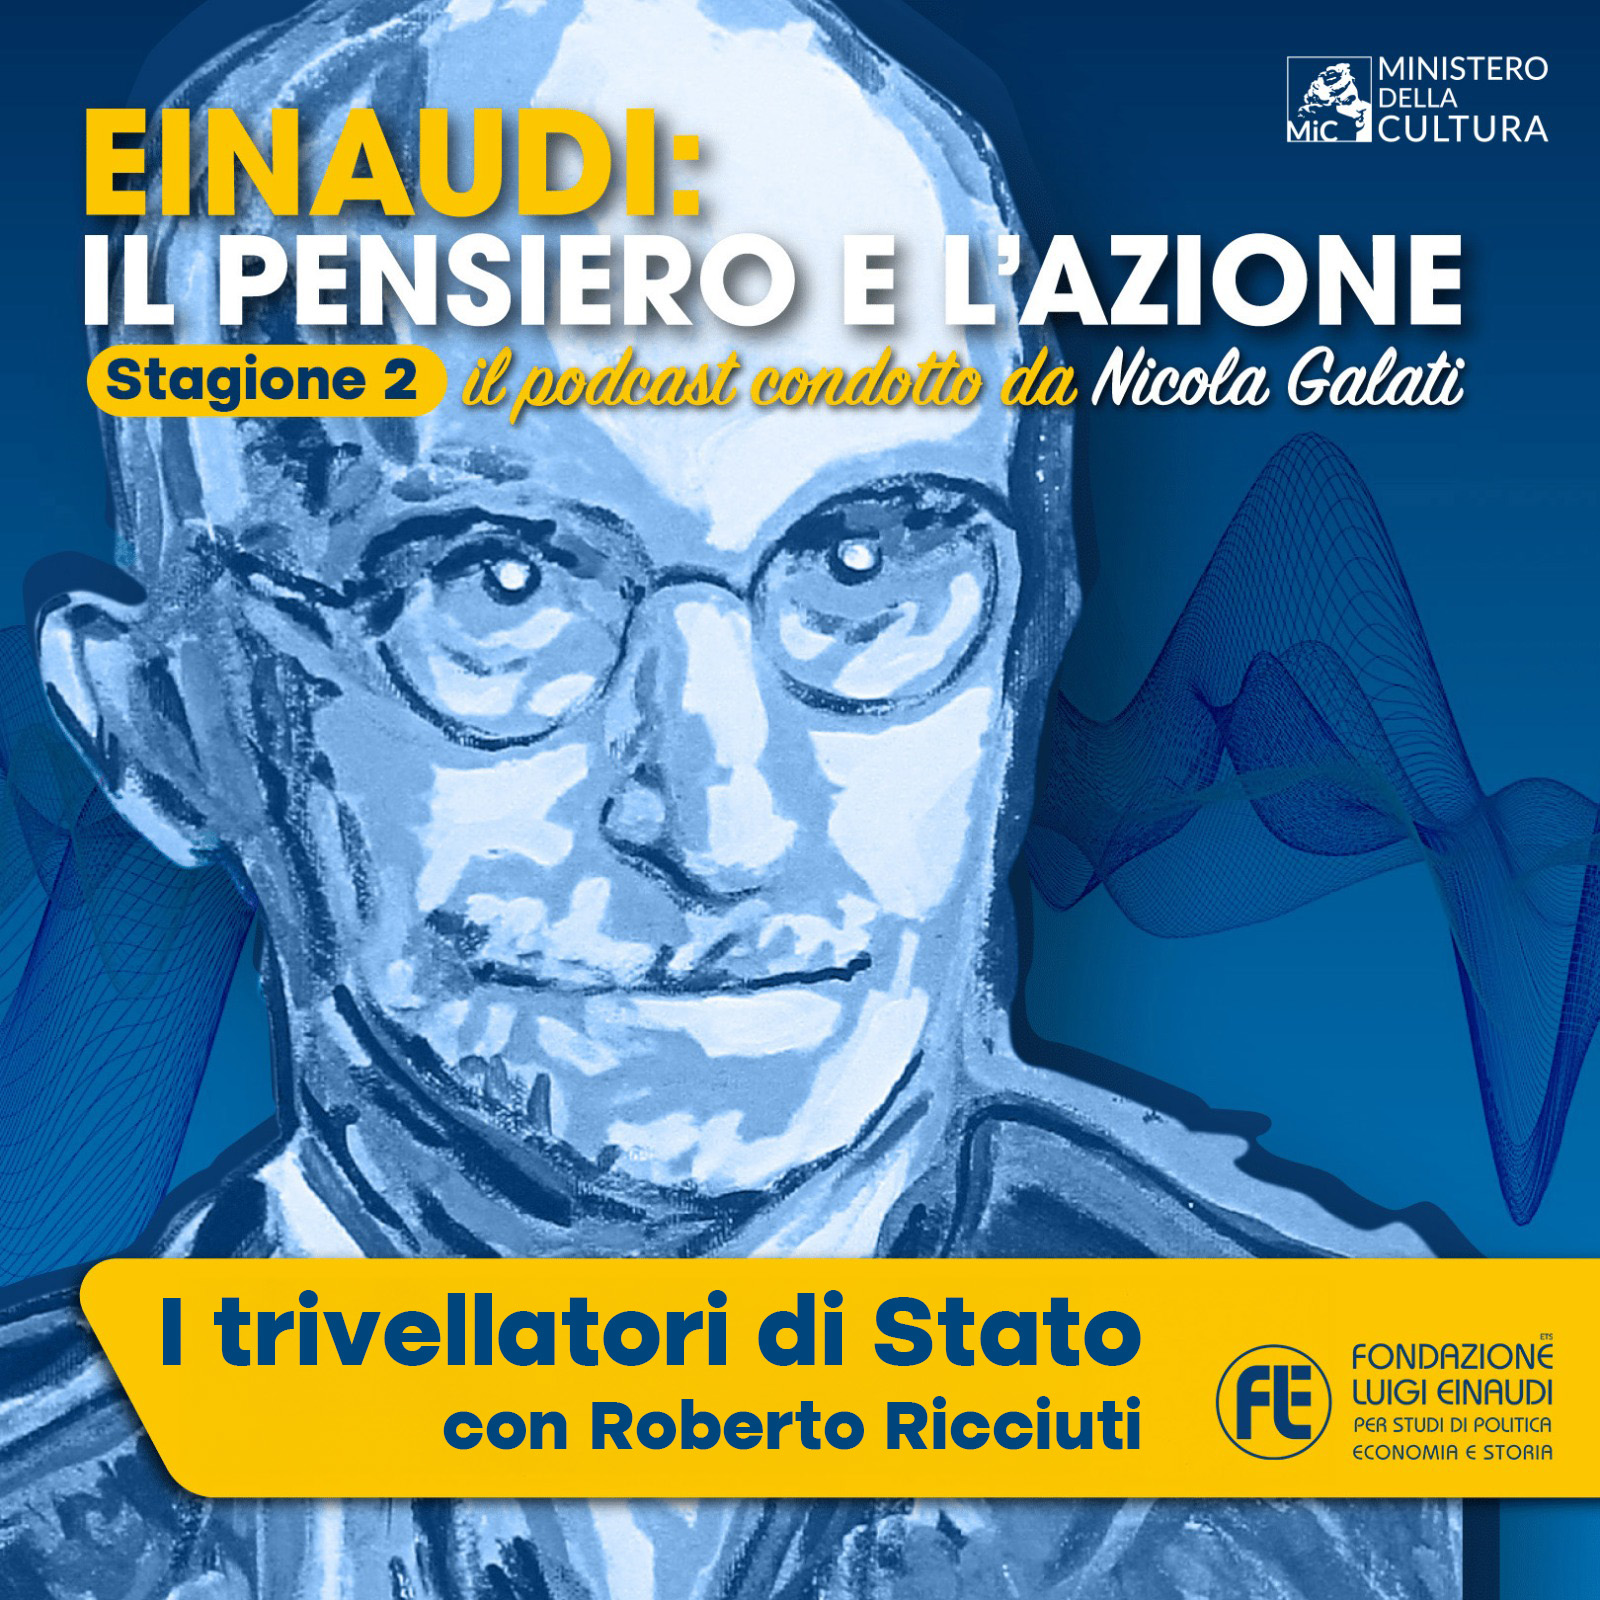 Einaudi: il pensiero e l’azione – “I trivellatori di Stato” con Roberto Ricciuti